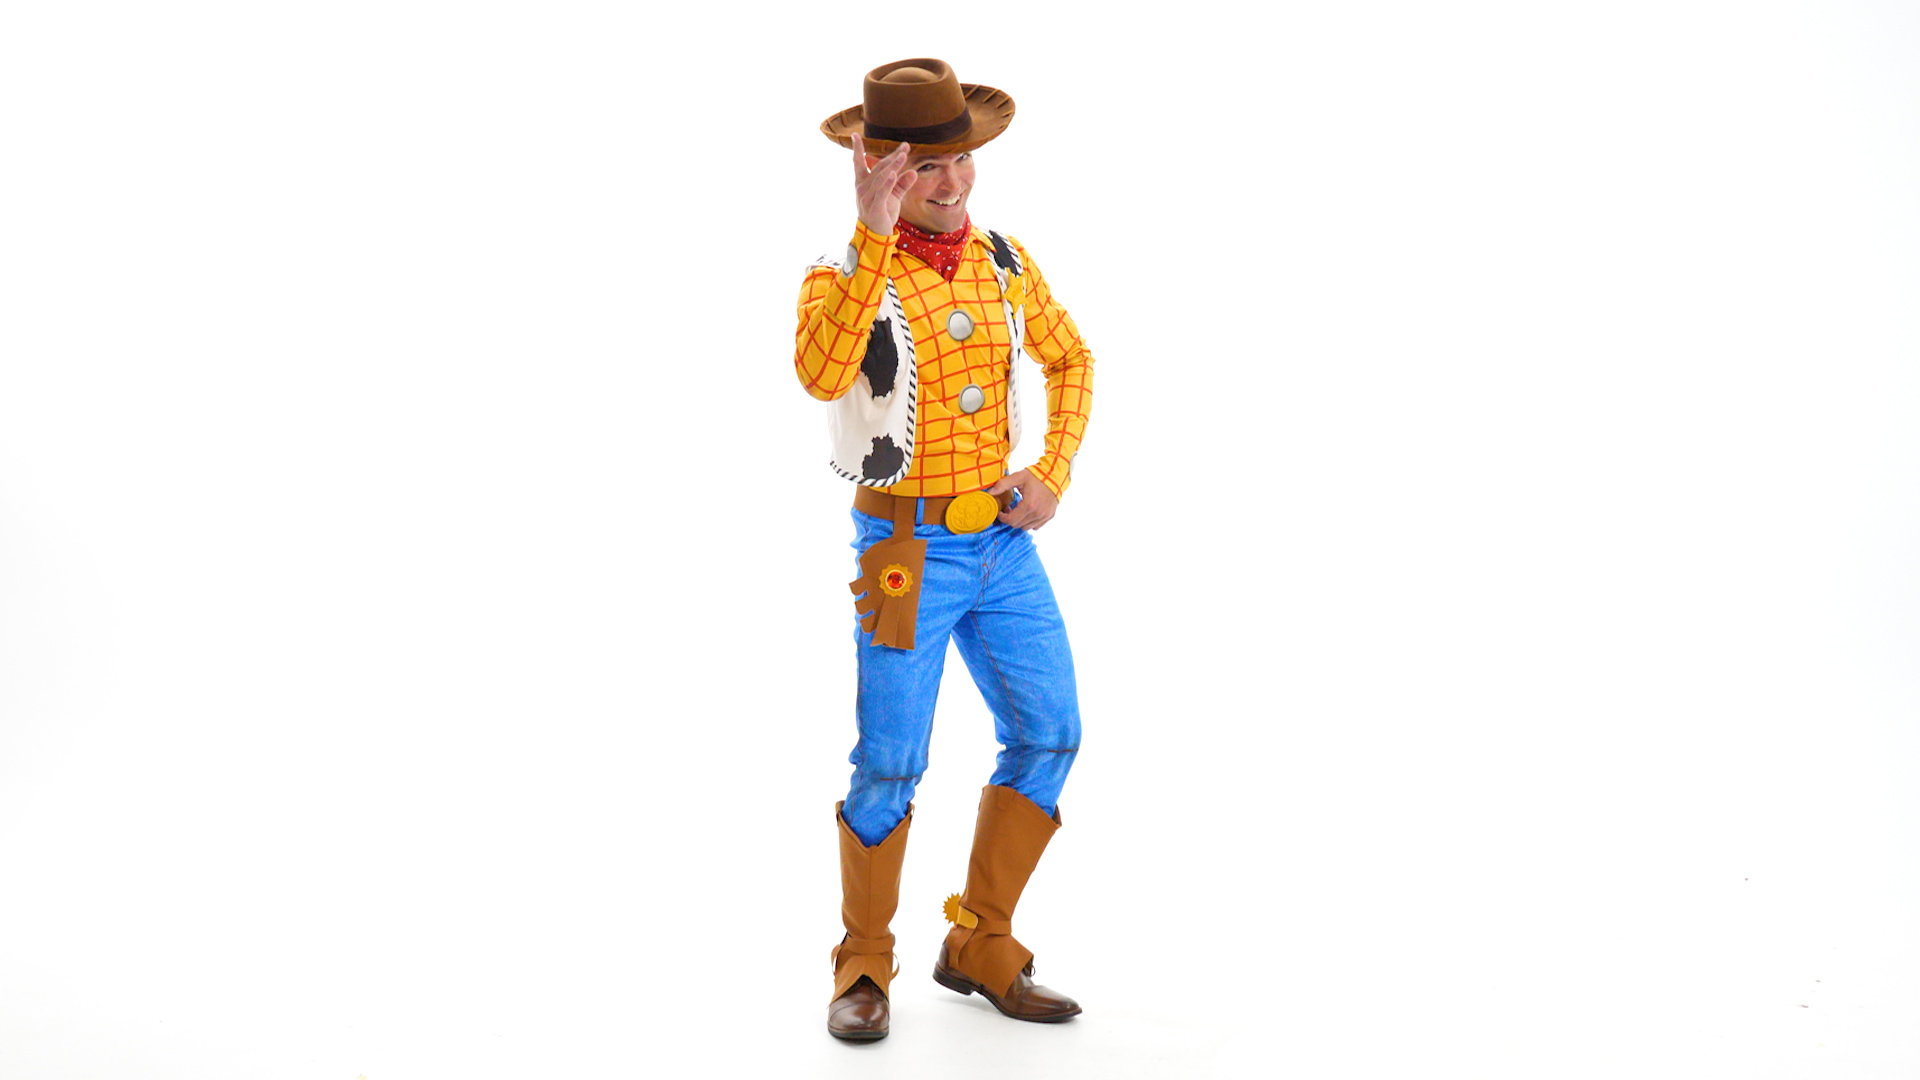 Disfraz Woody Toy Story ORIGINAL Disney